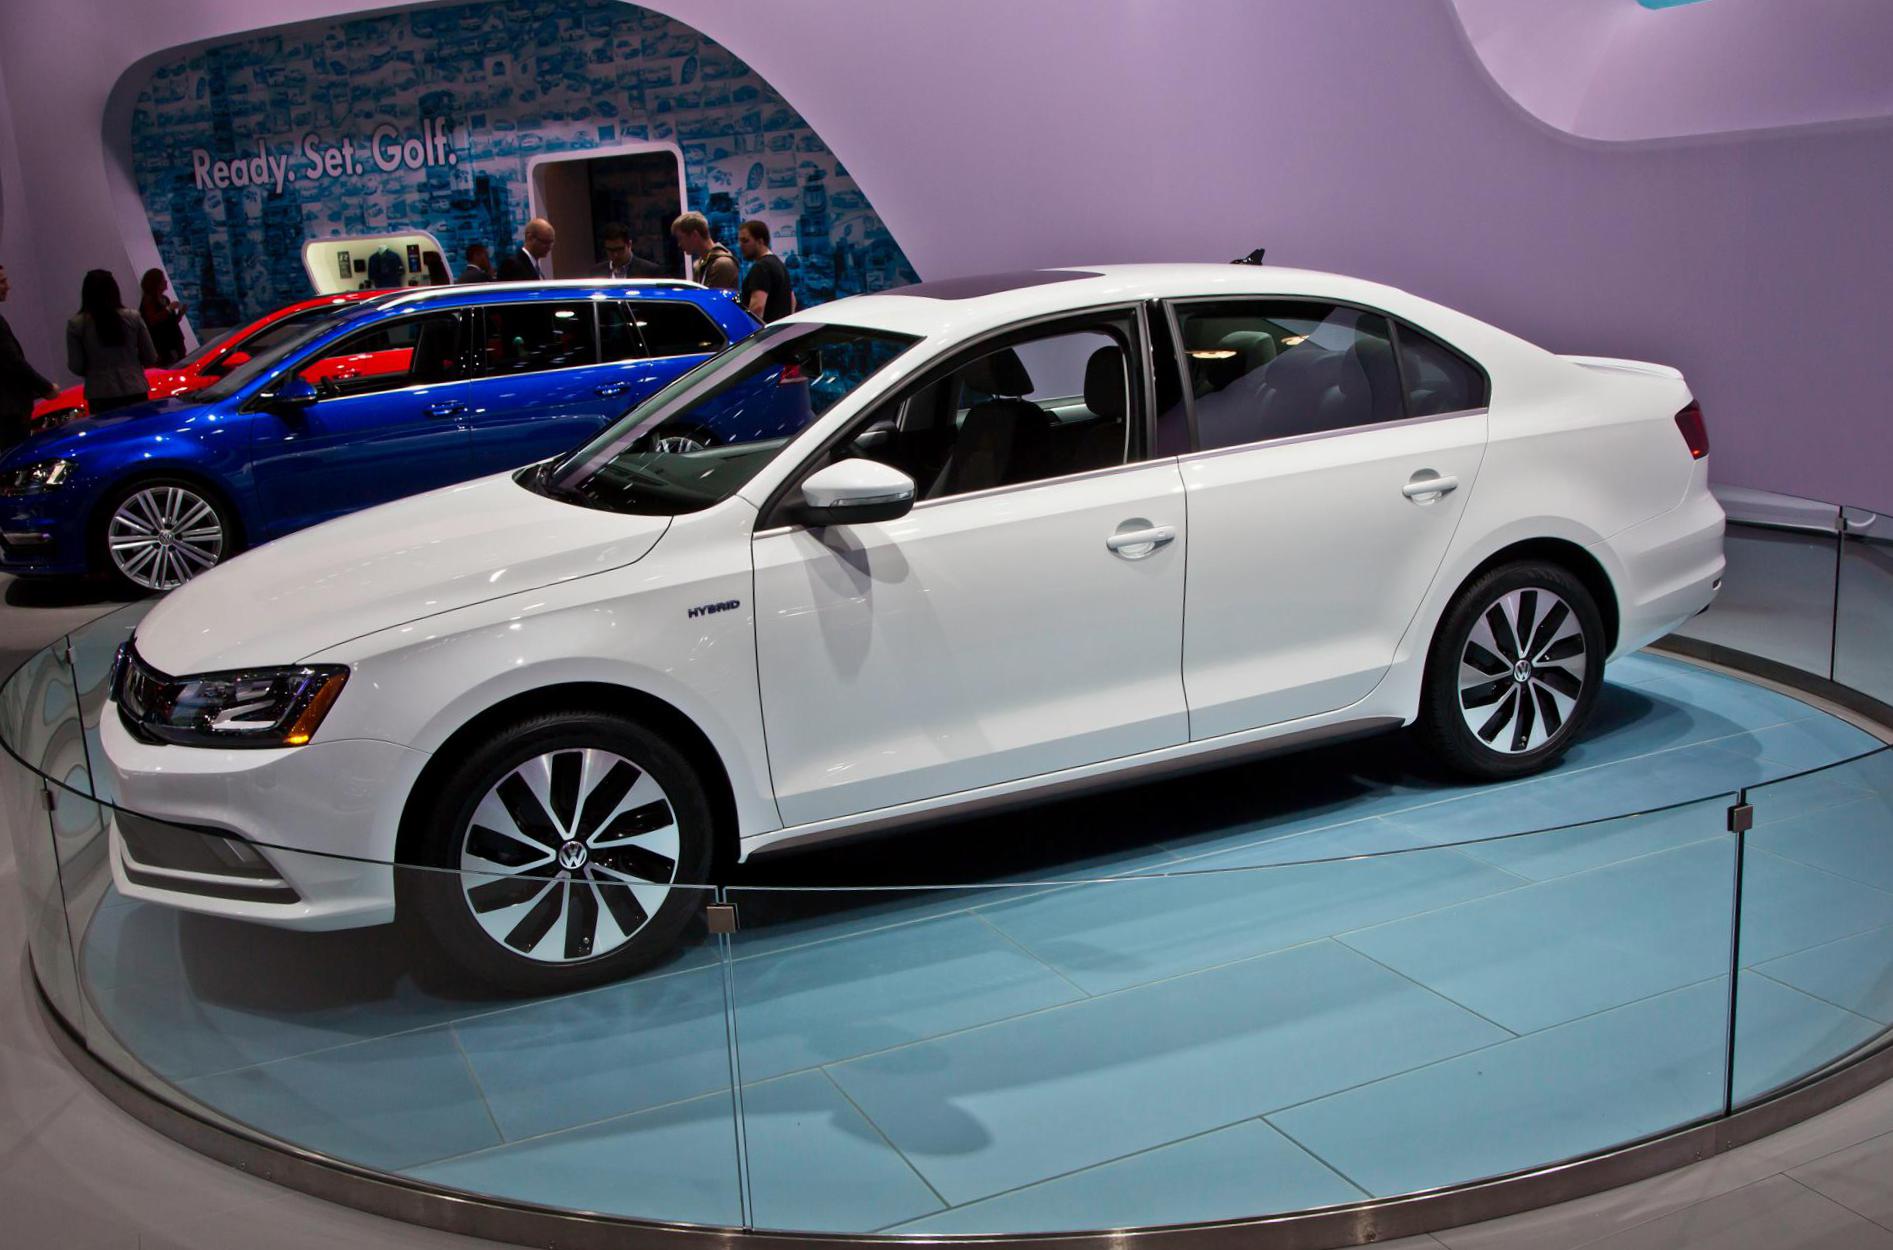 Jetta Hybrid Volkswagen concept 2013